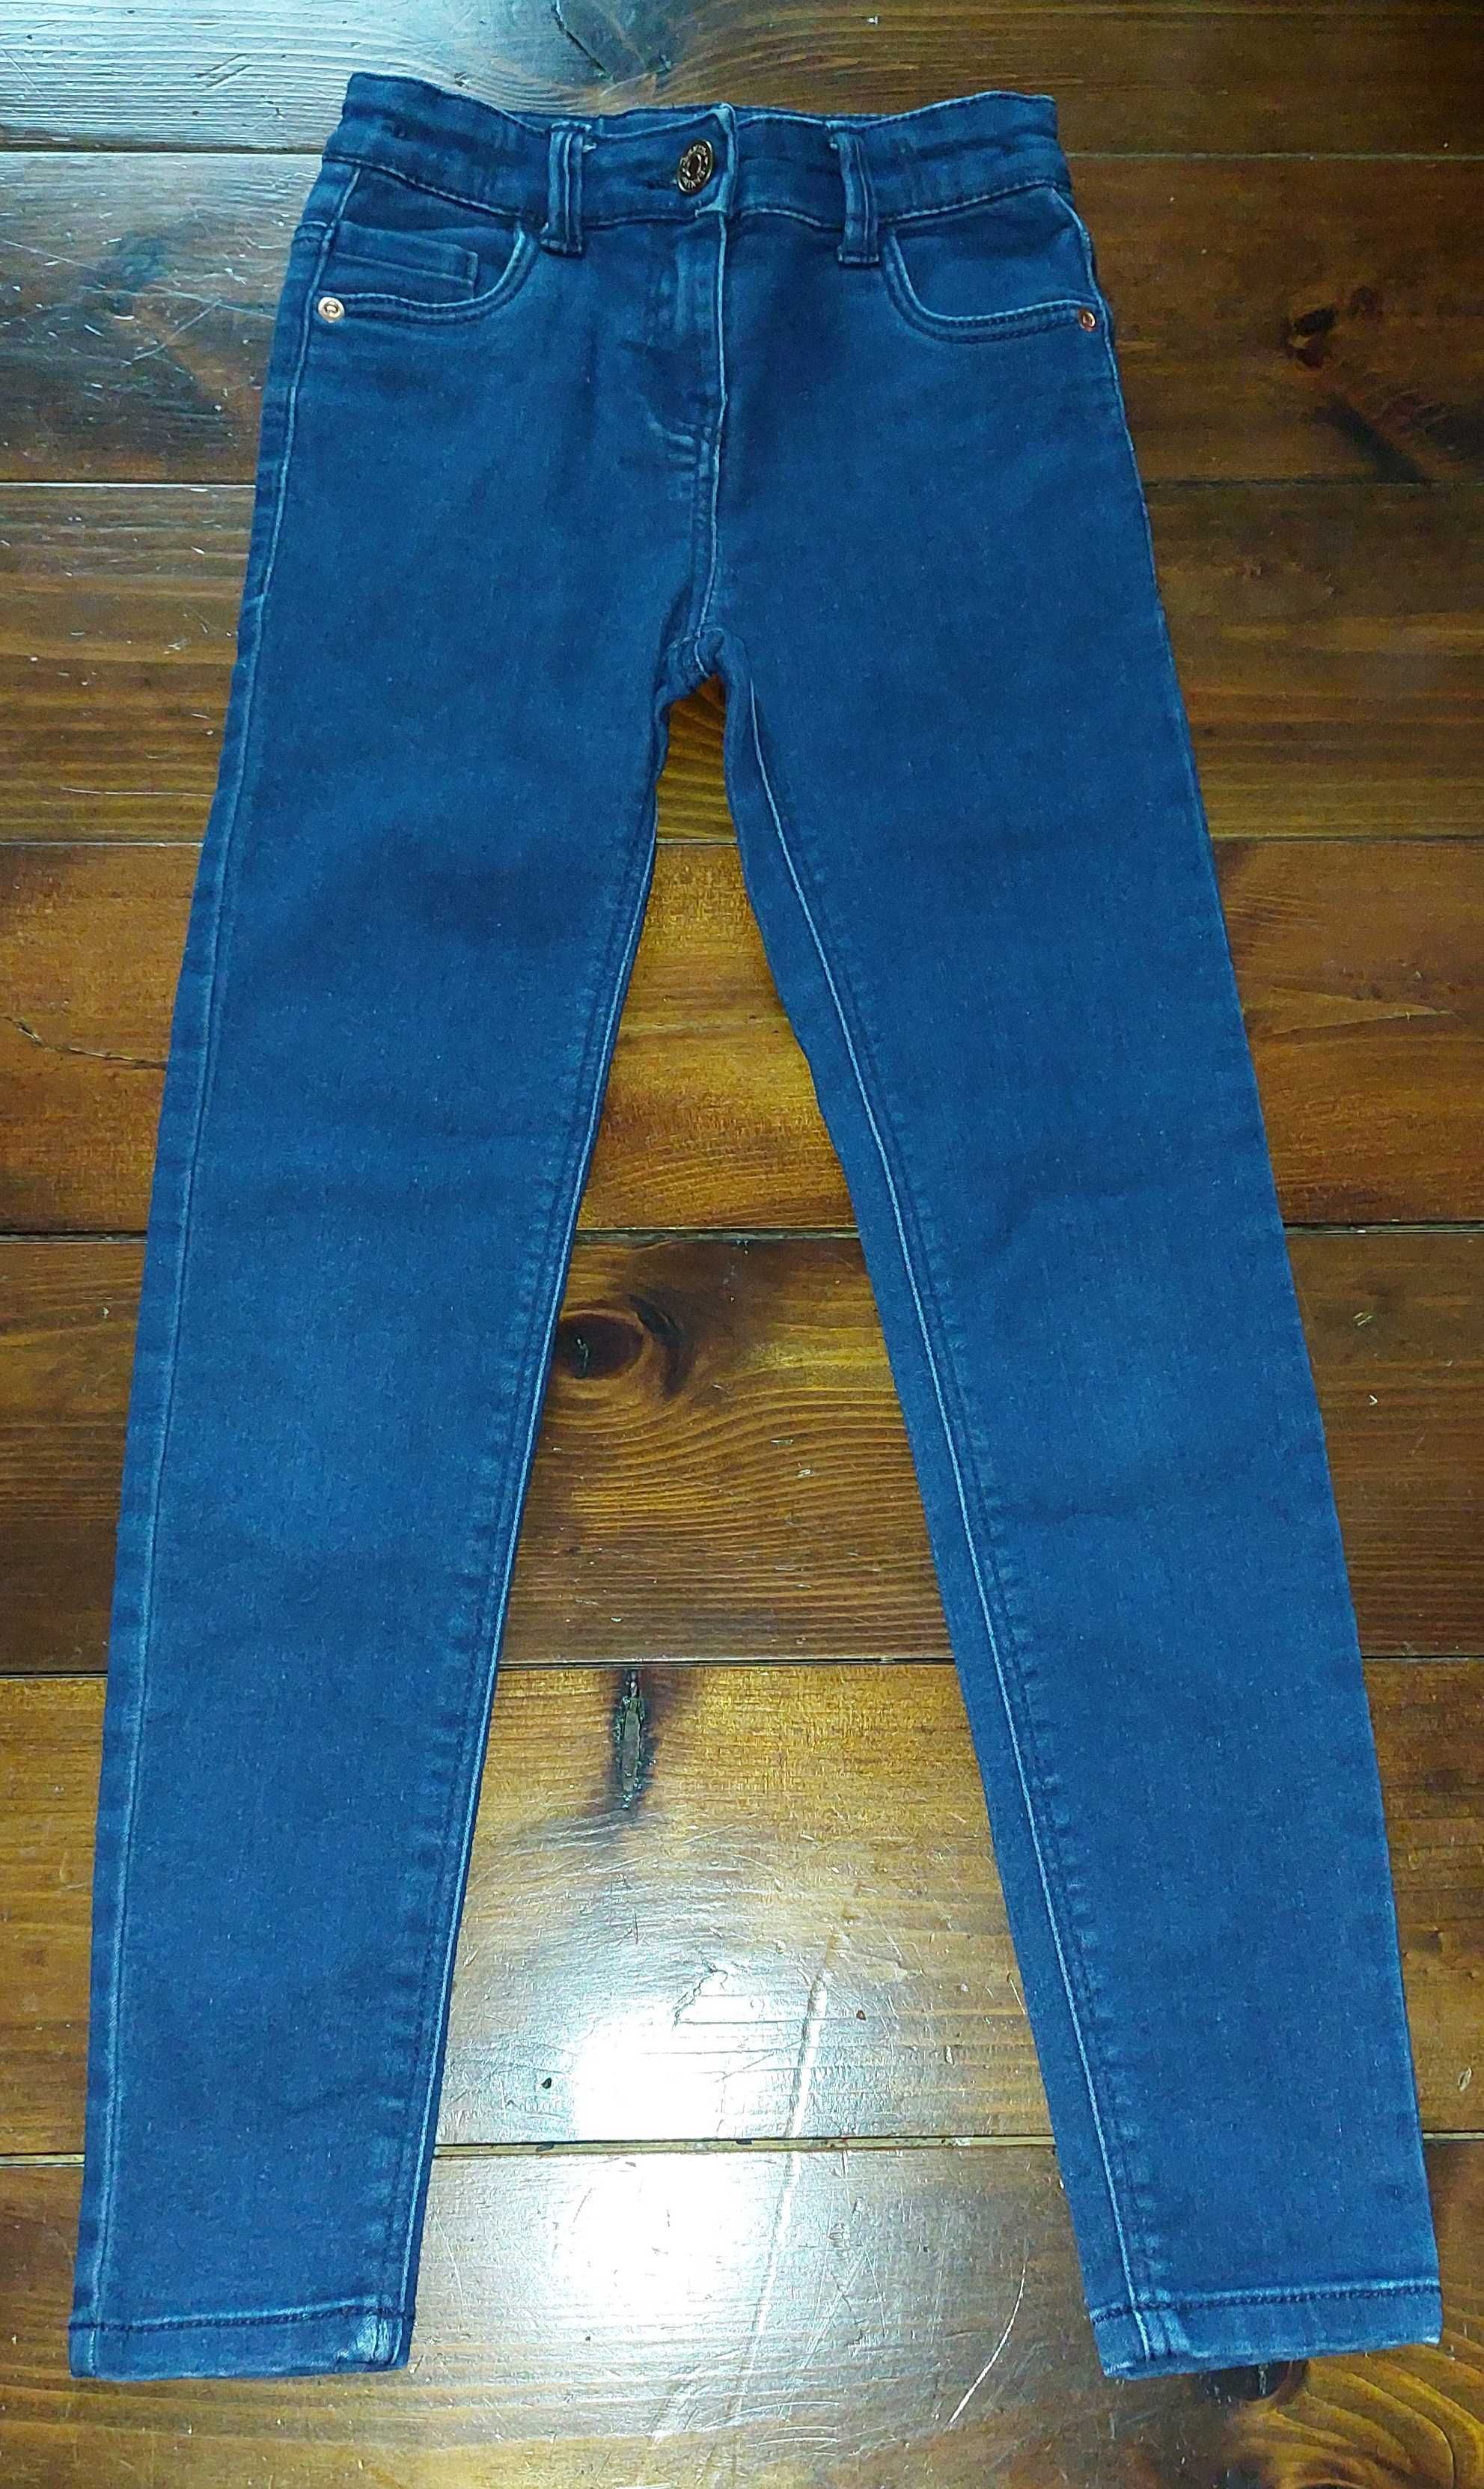 TU, Spodnie jeansowe dla dziewczynki, rurki, rozmiar 128